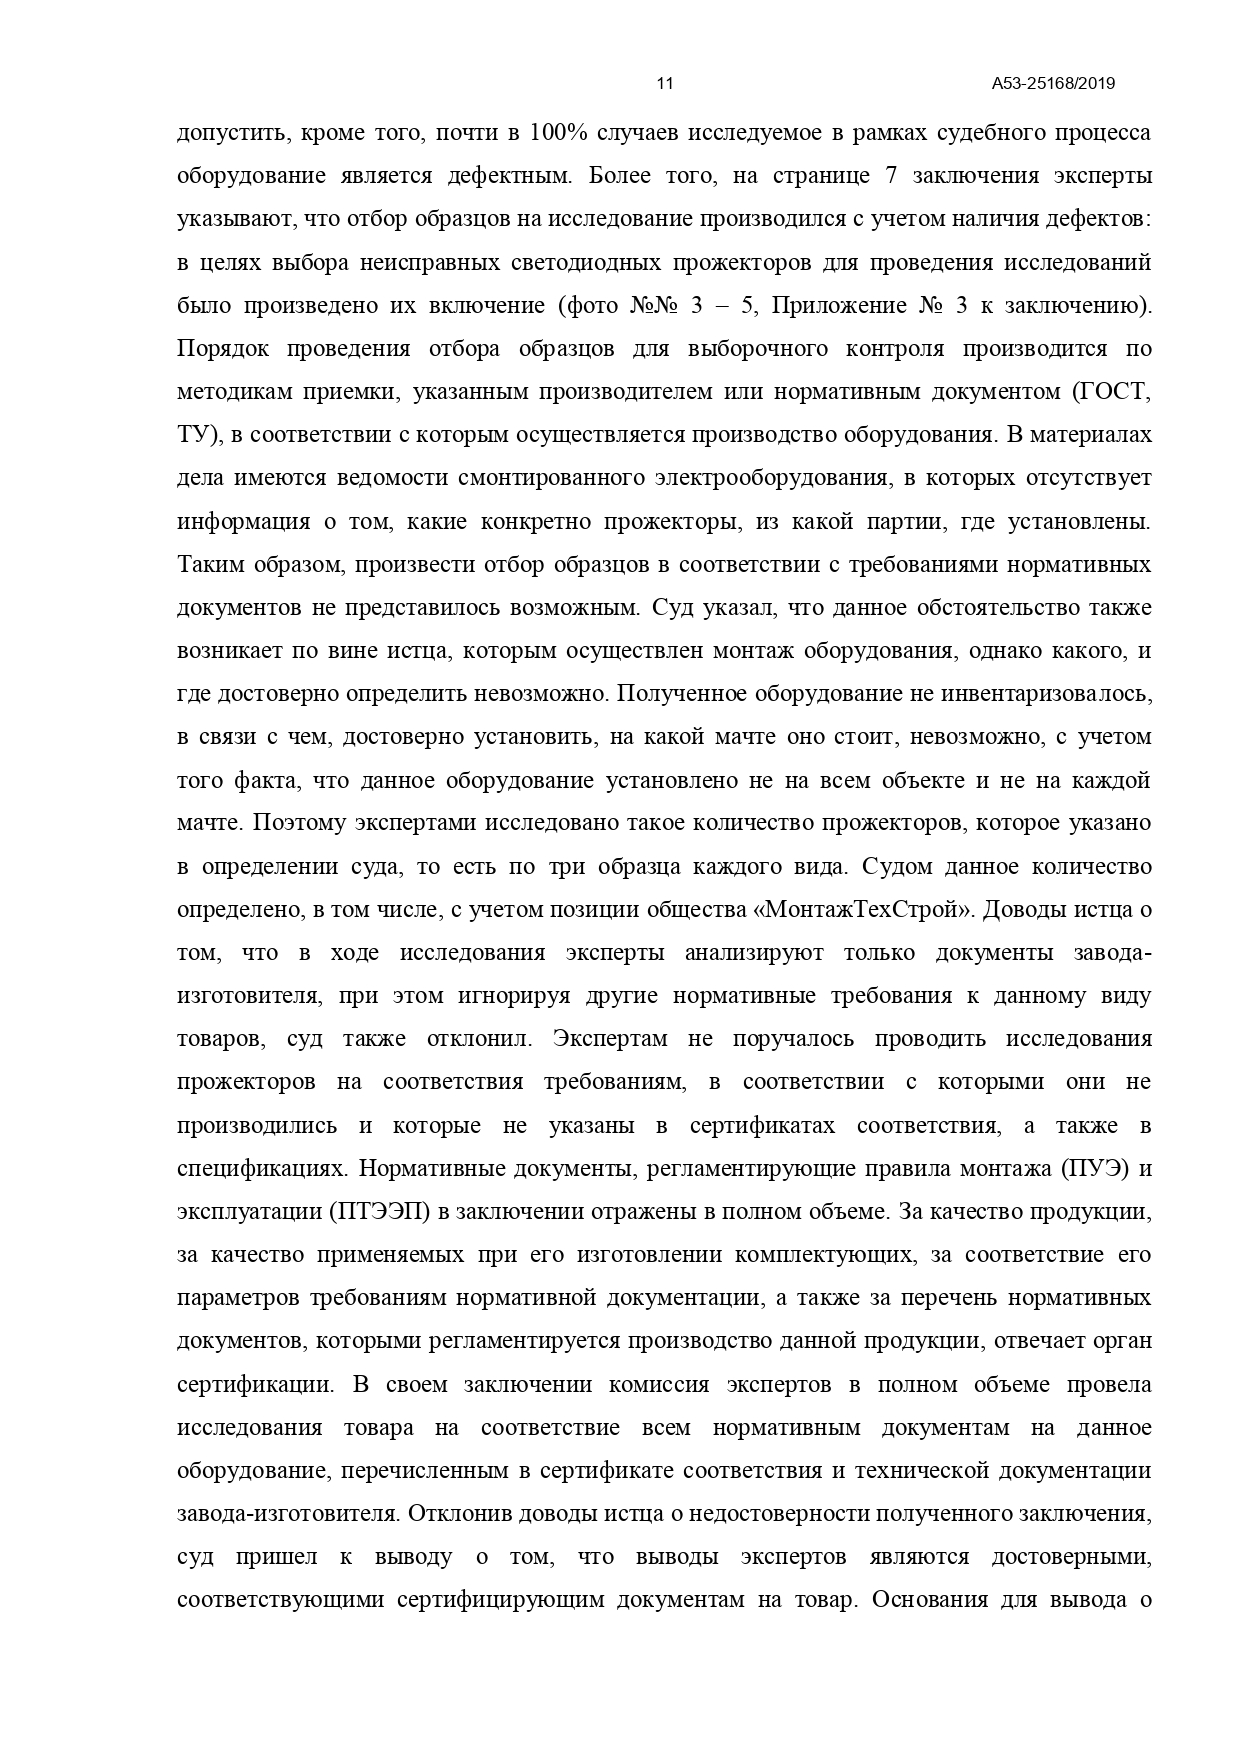 Арбитражный суд Северо-Кавказского округа вынес постановление по делу №А53-25168/2019